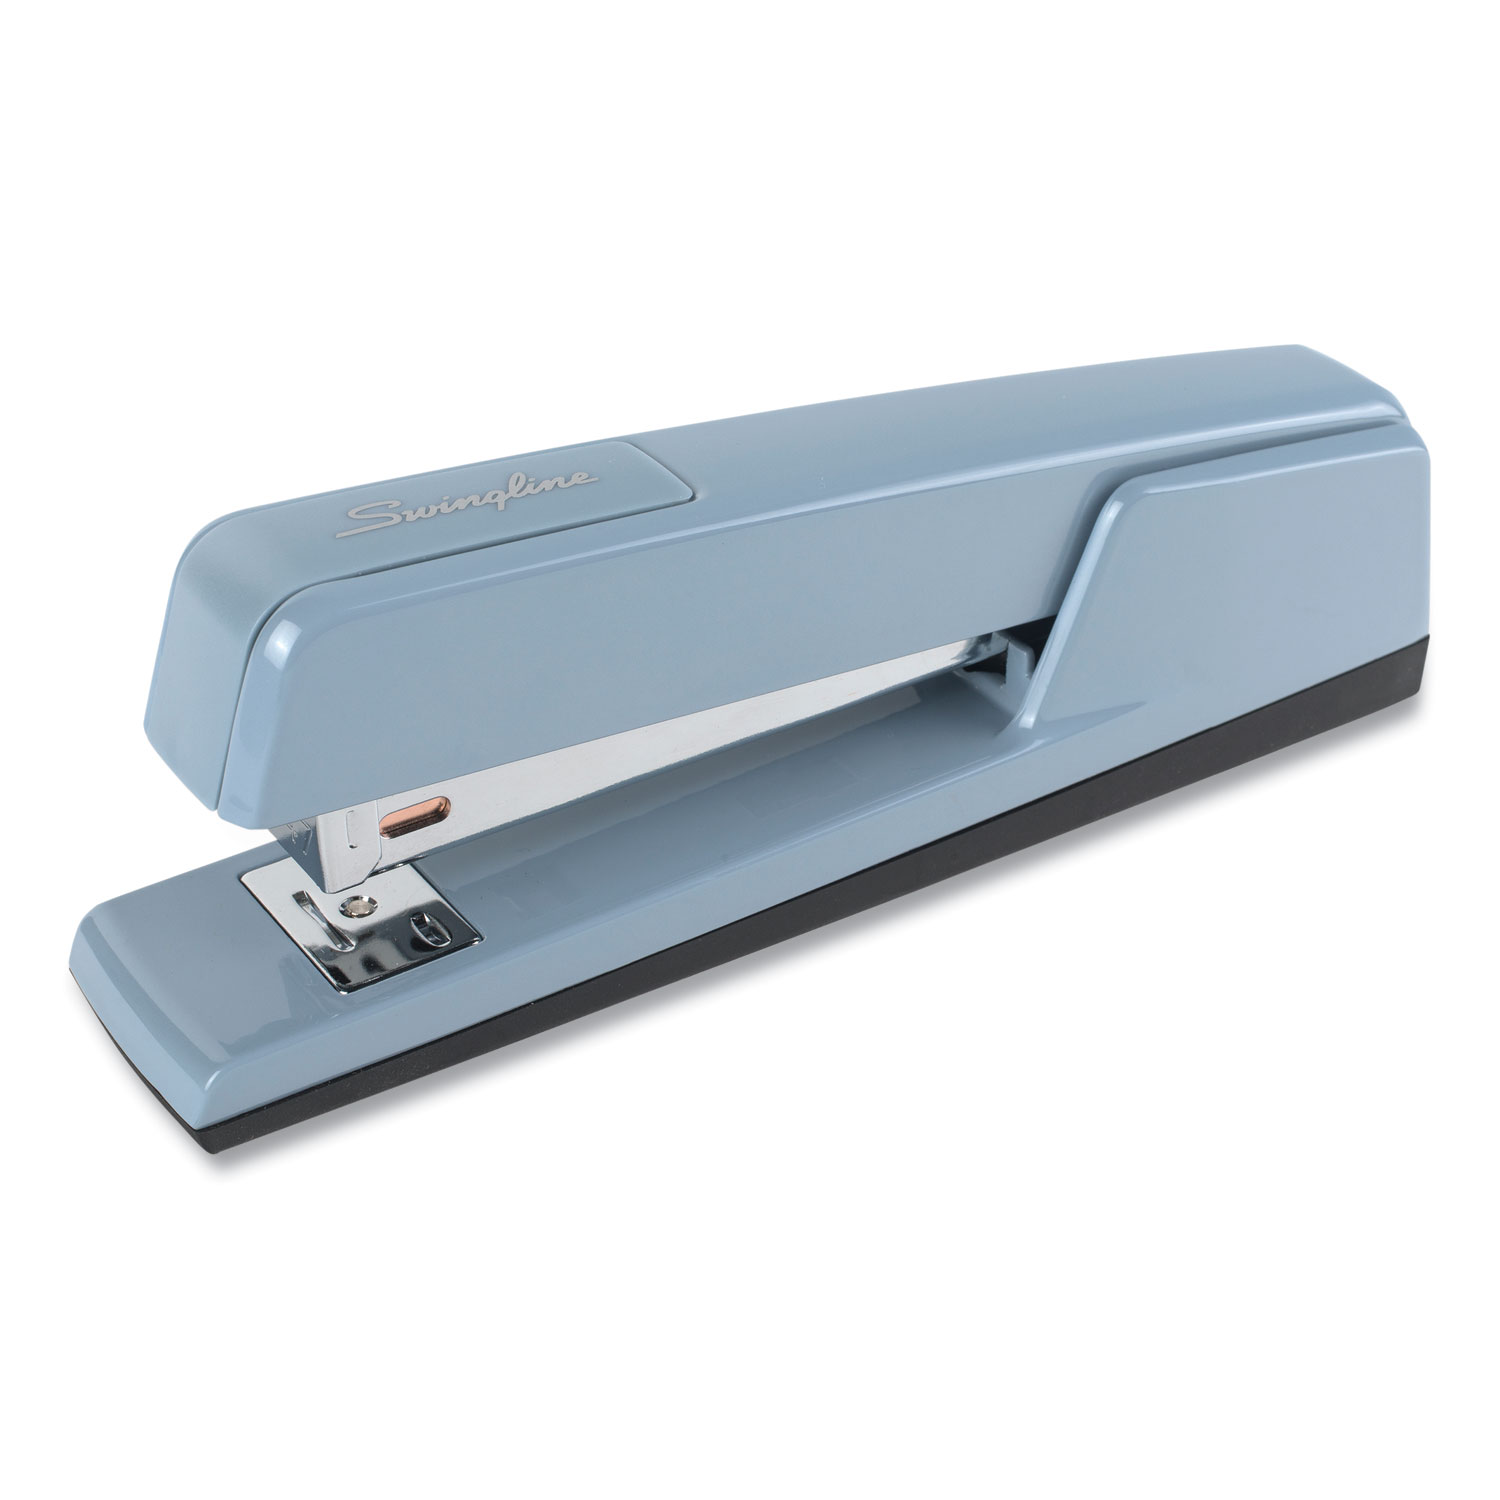 Swingline SWI74759 Business Full Strip Desk Stapler, Steel Gray